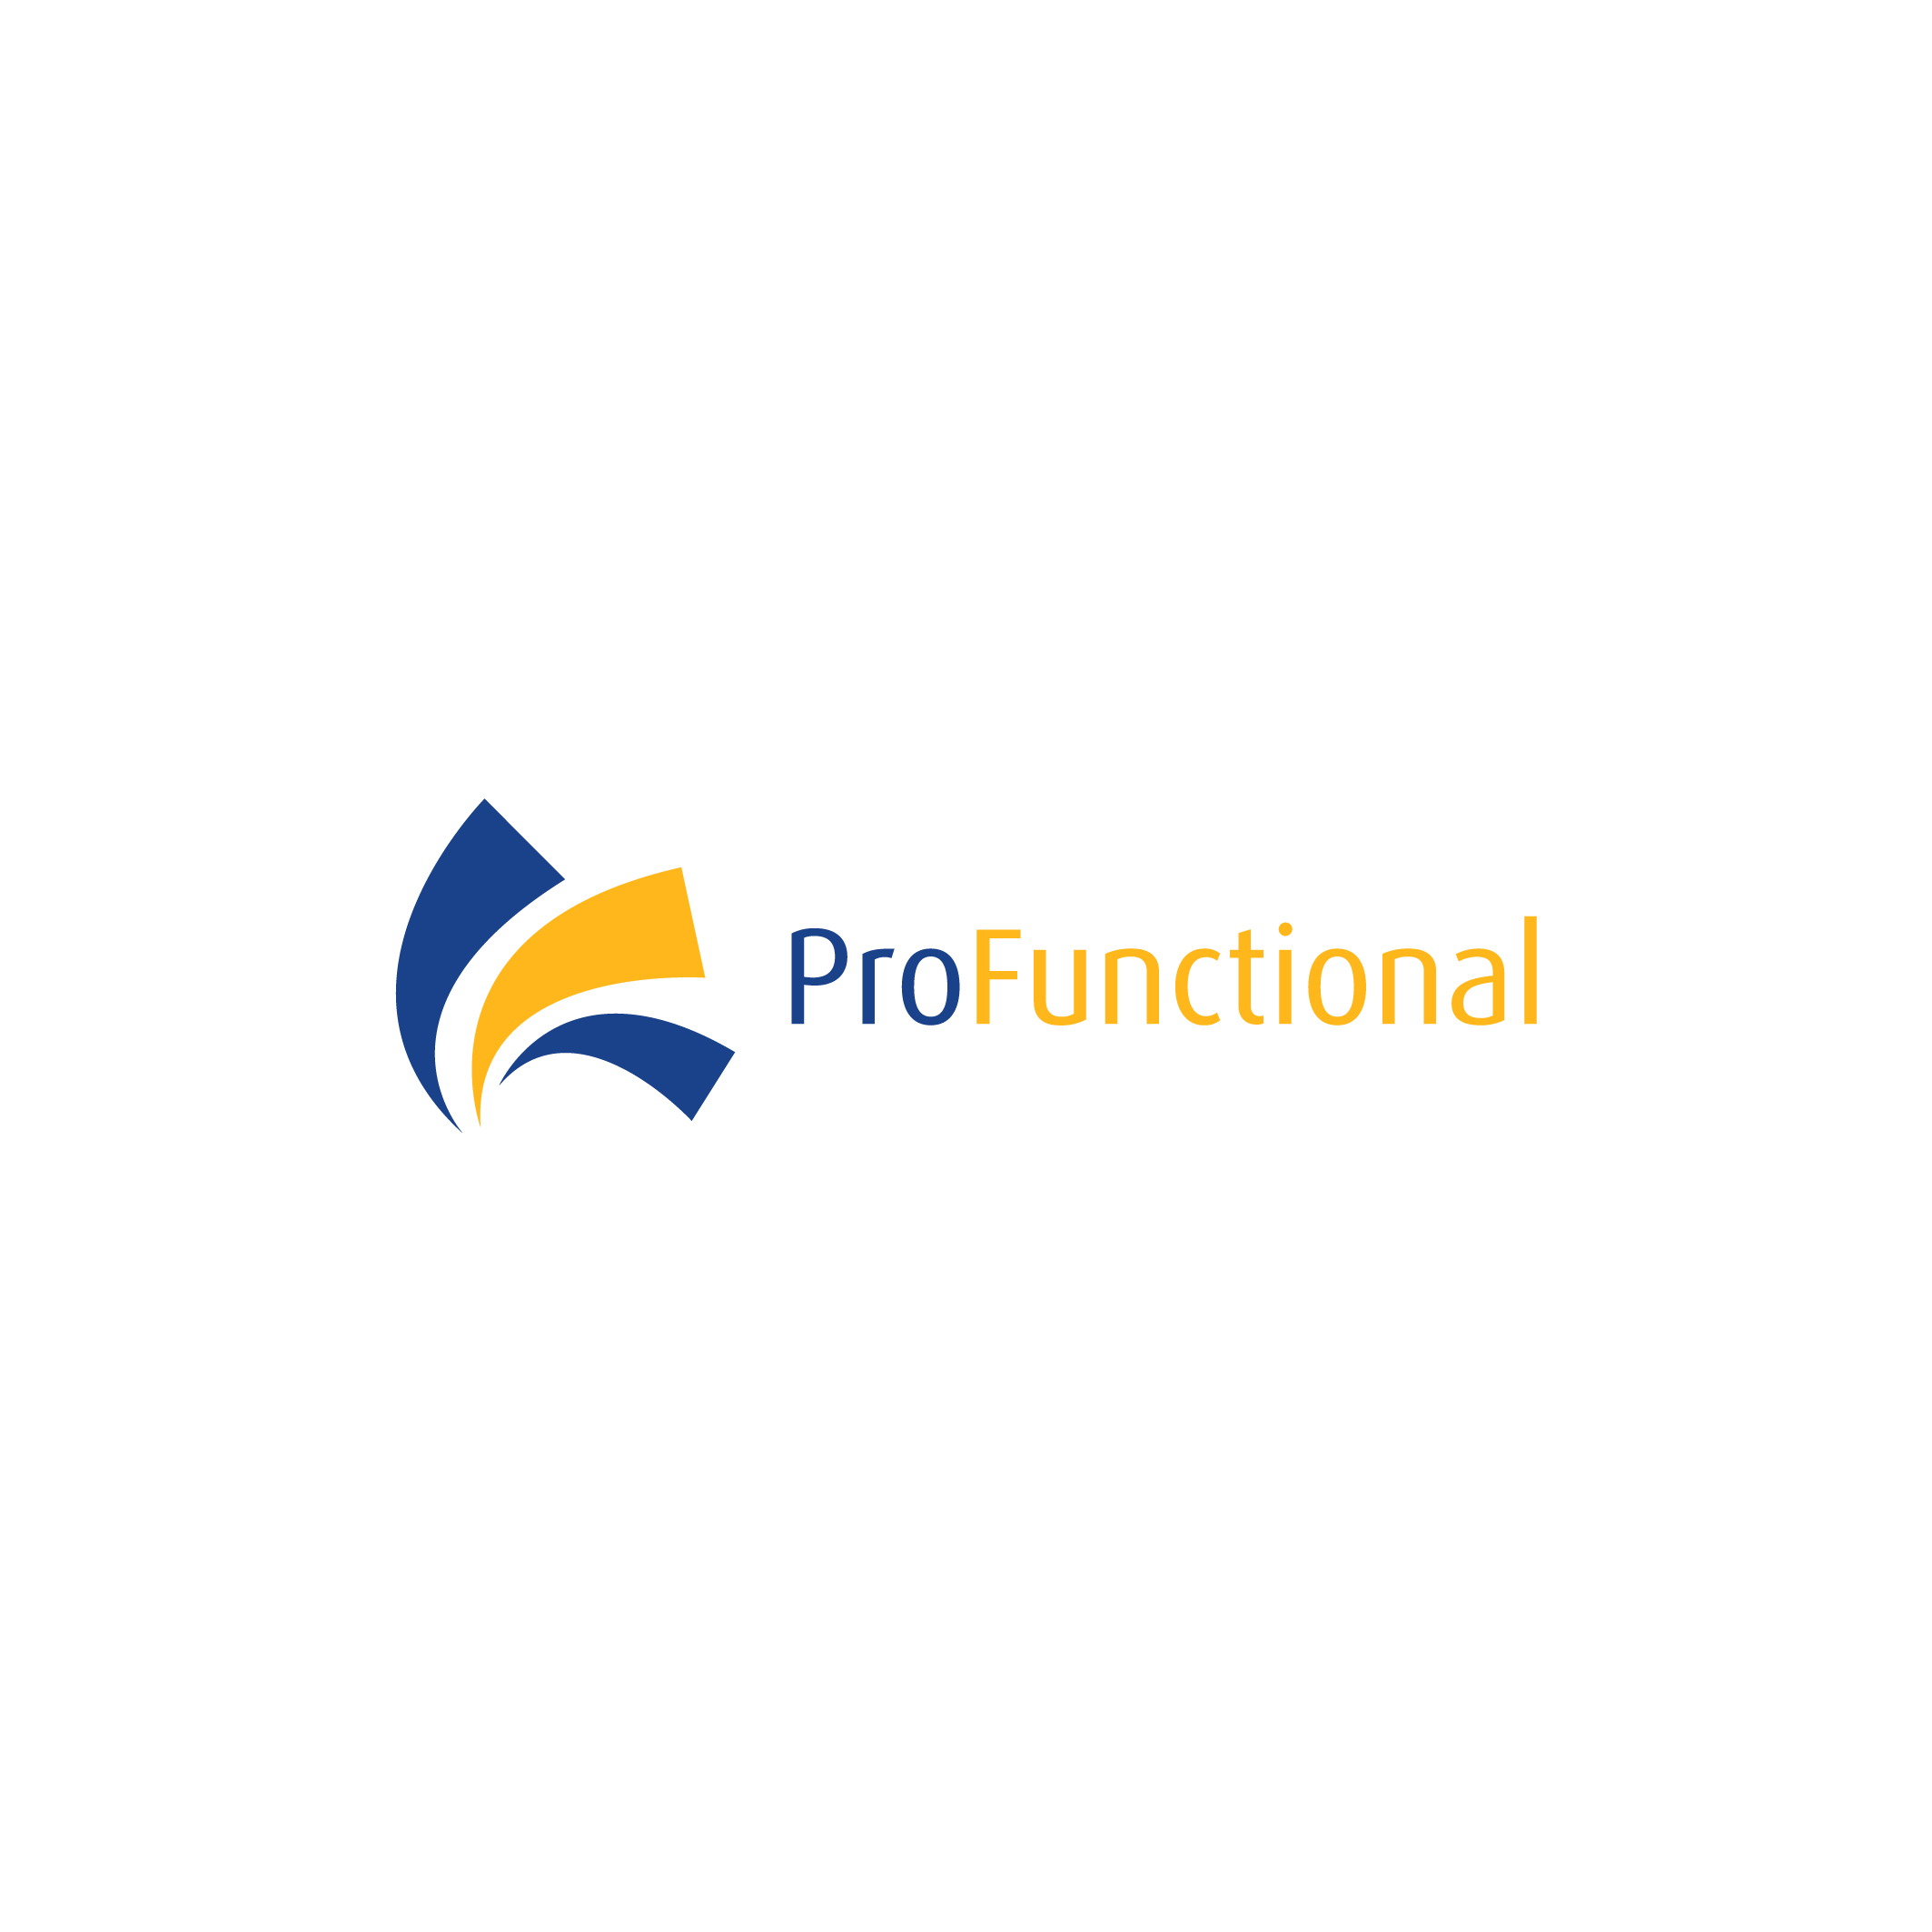 ProFunctional